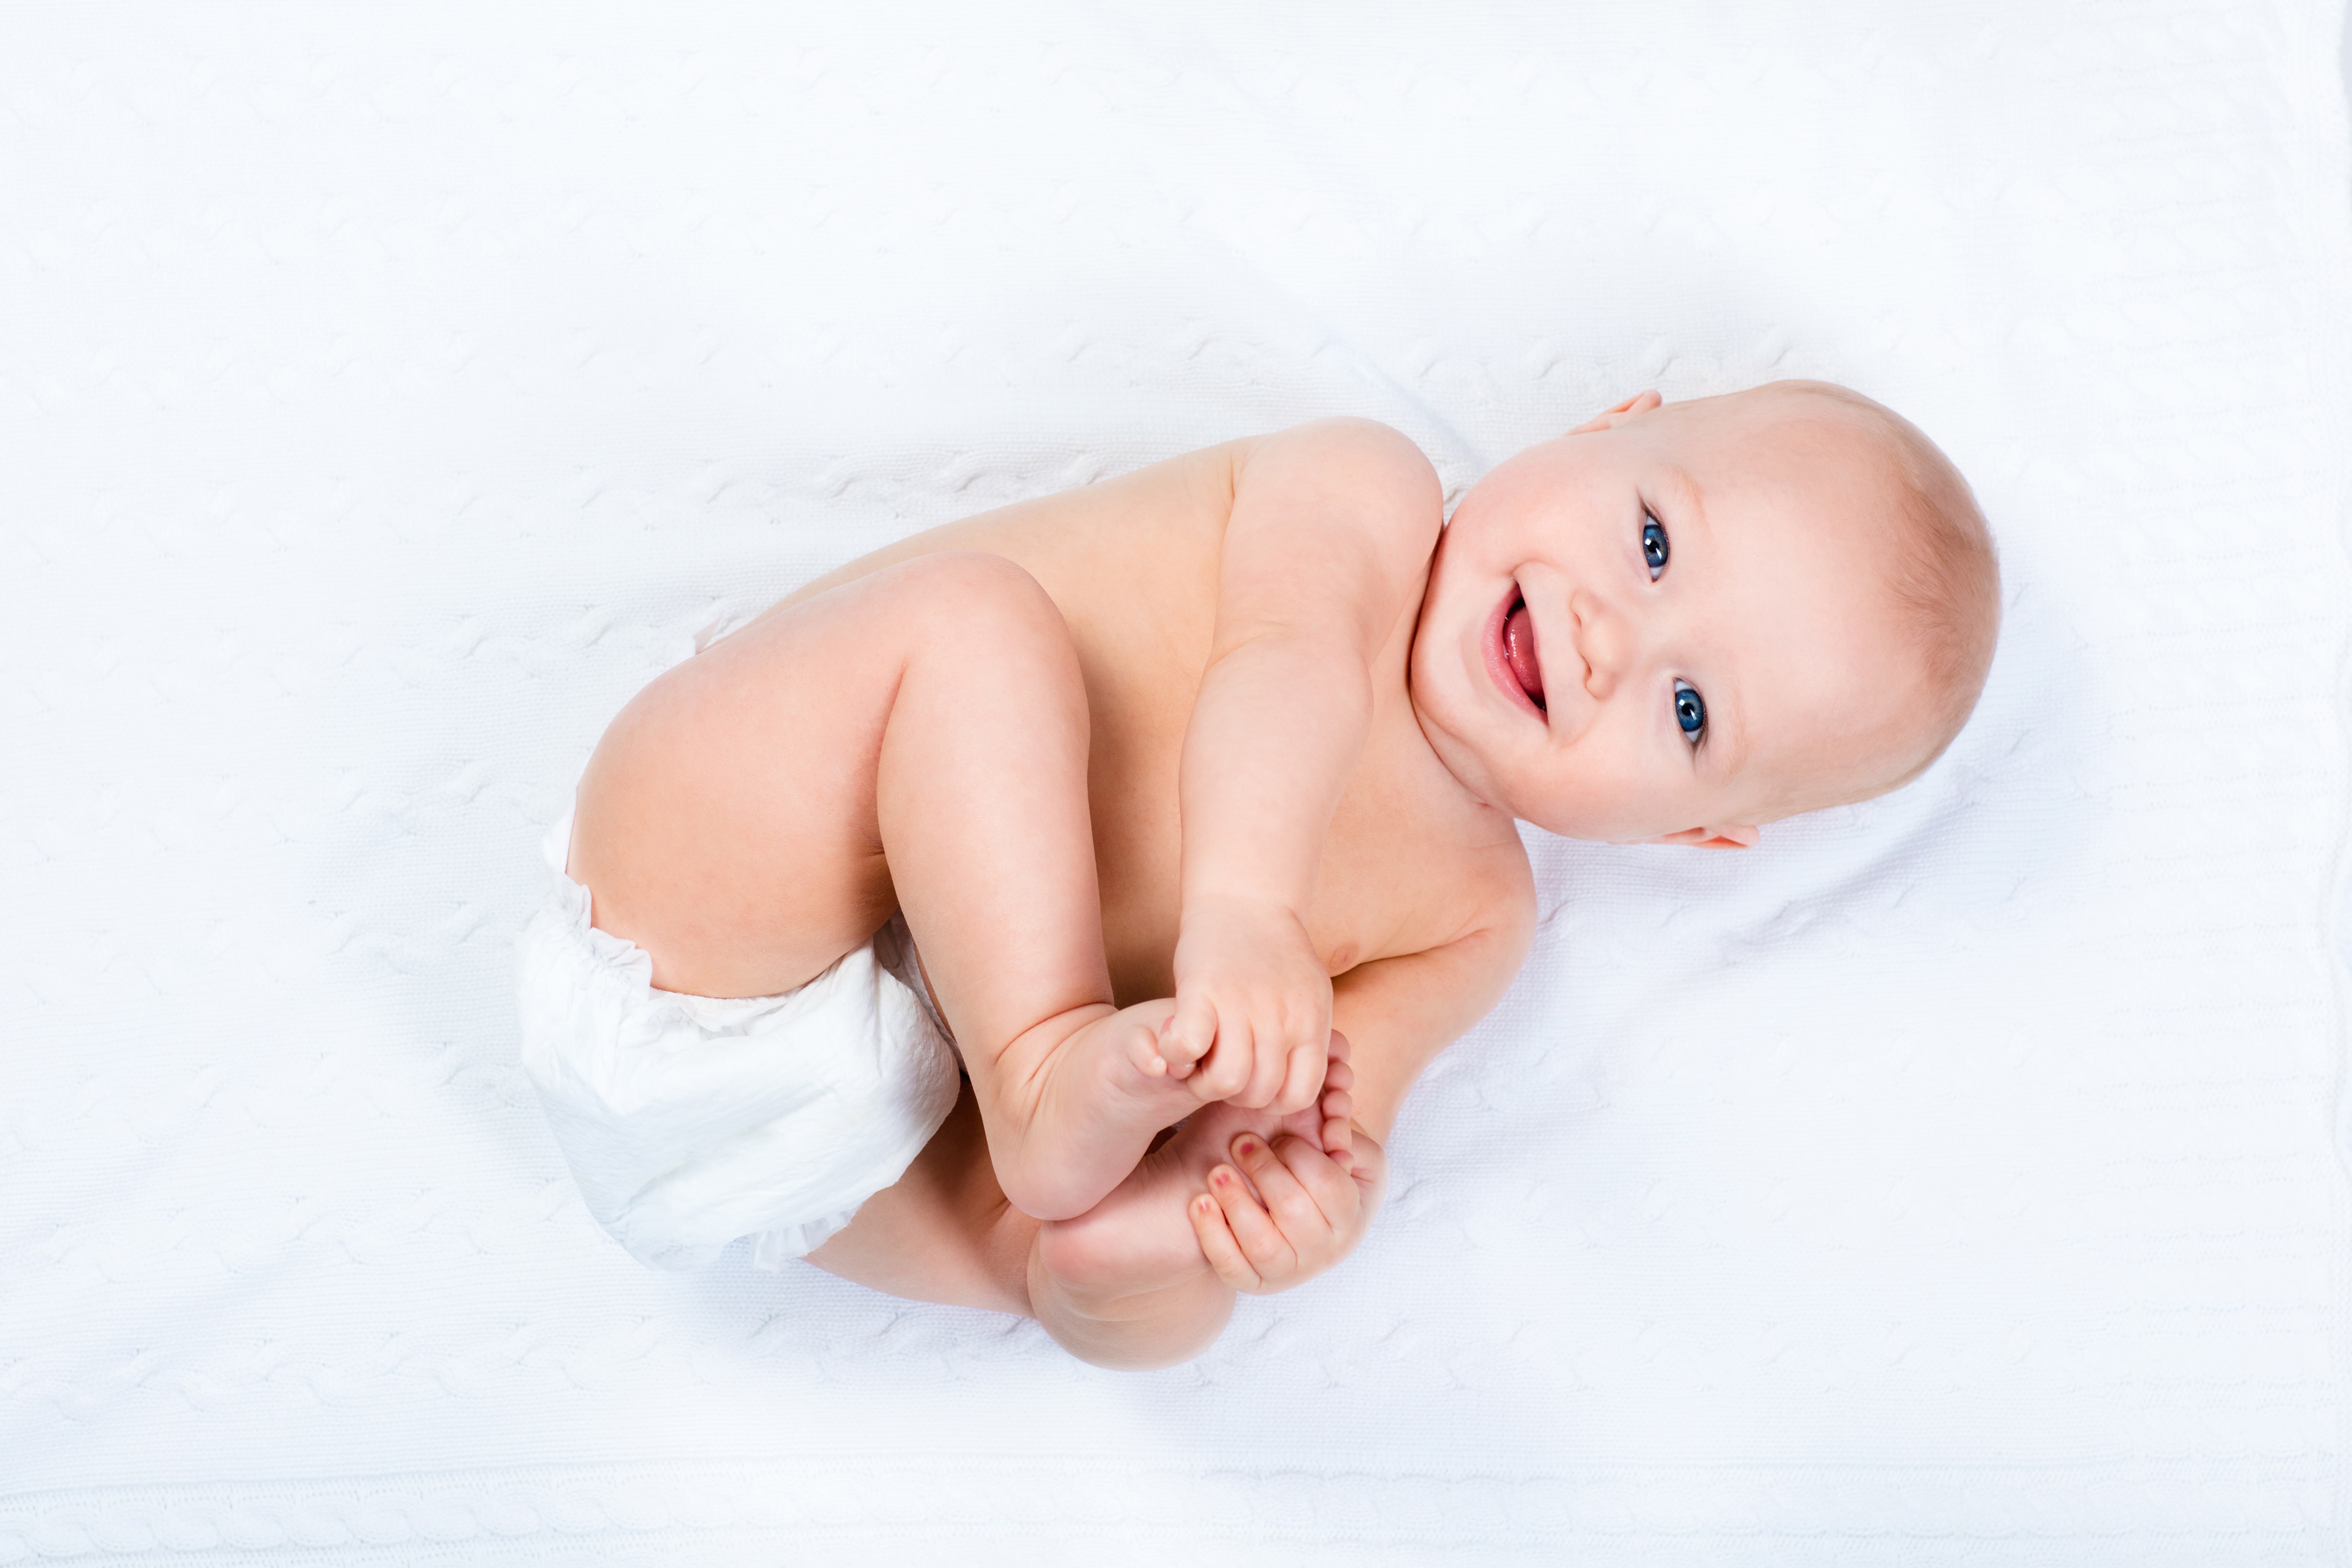 Інтимна гігієна: як правильно підмивати малюка